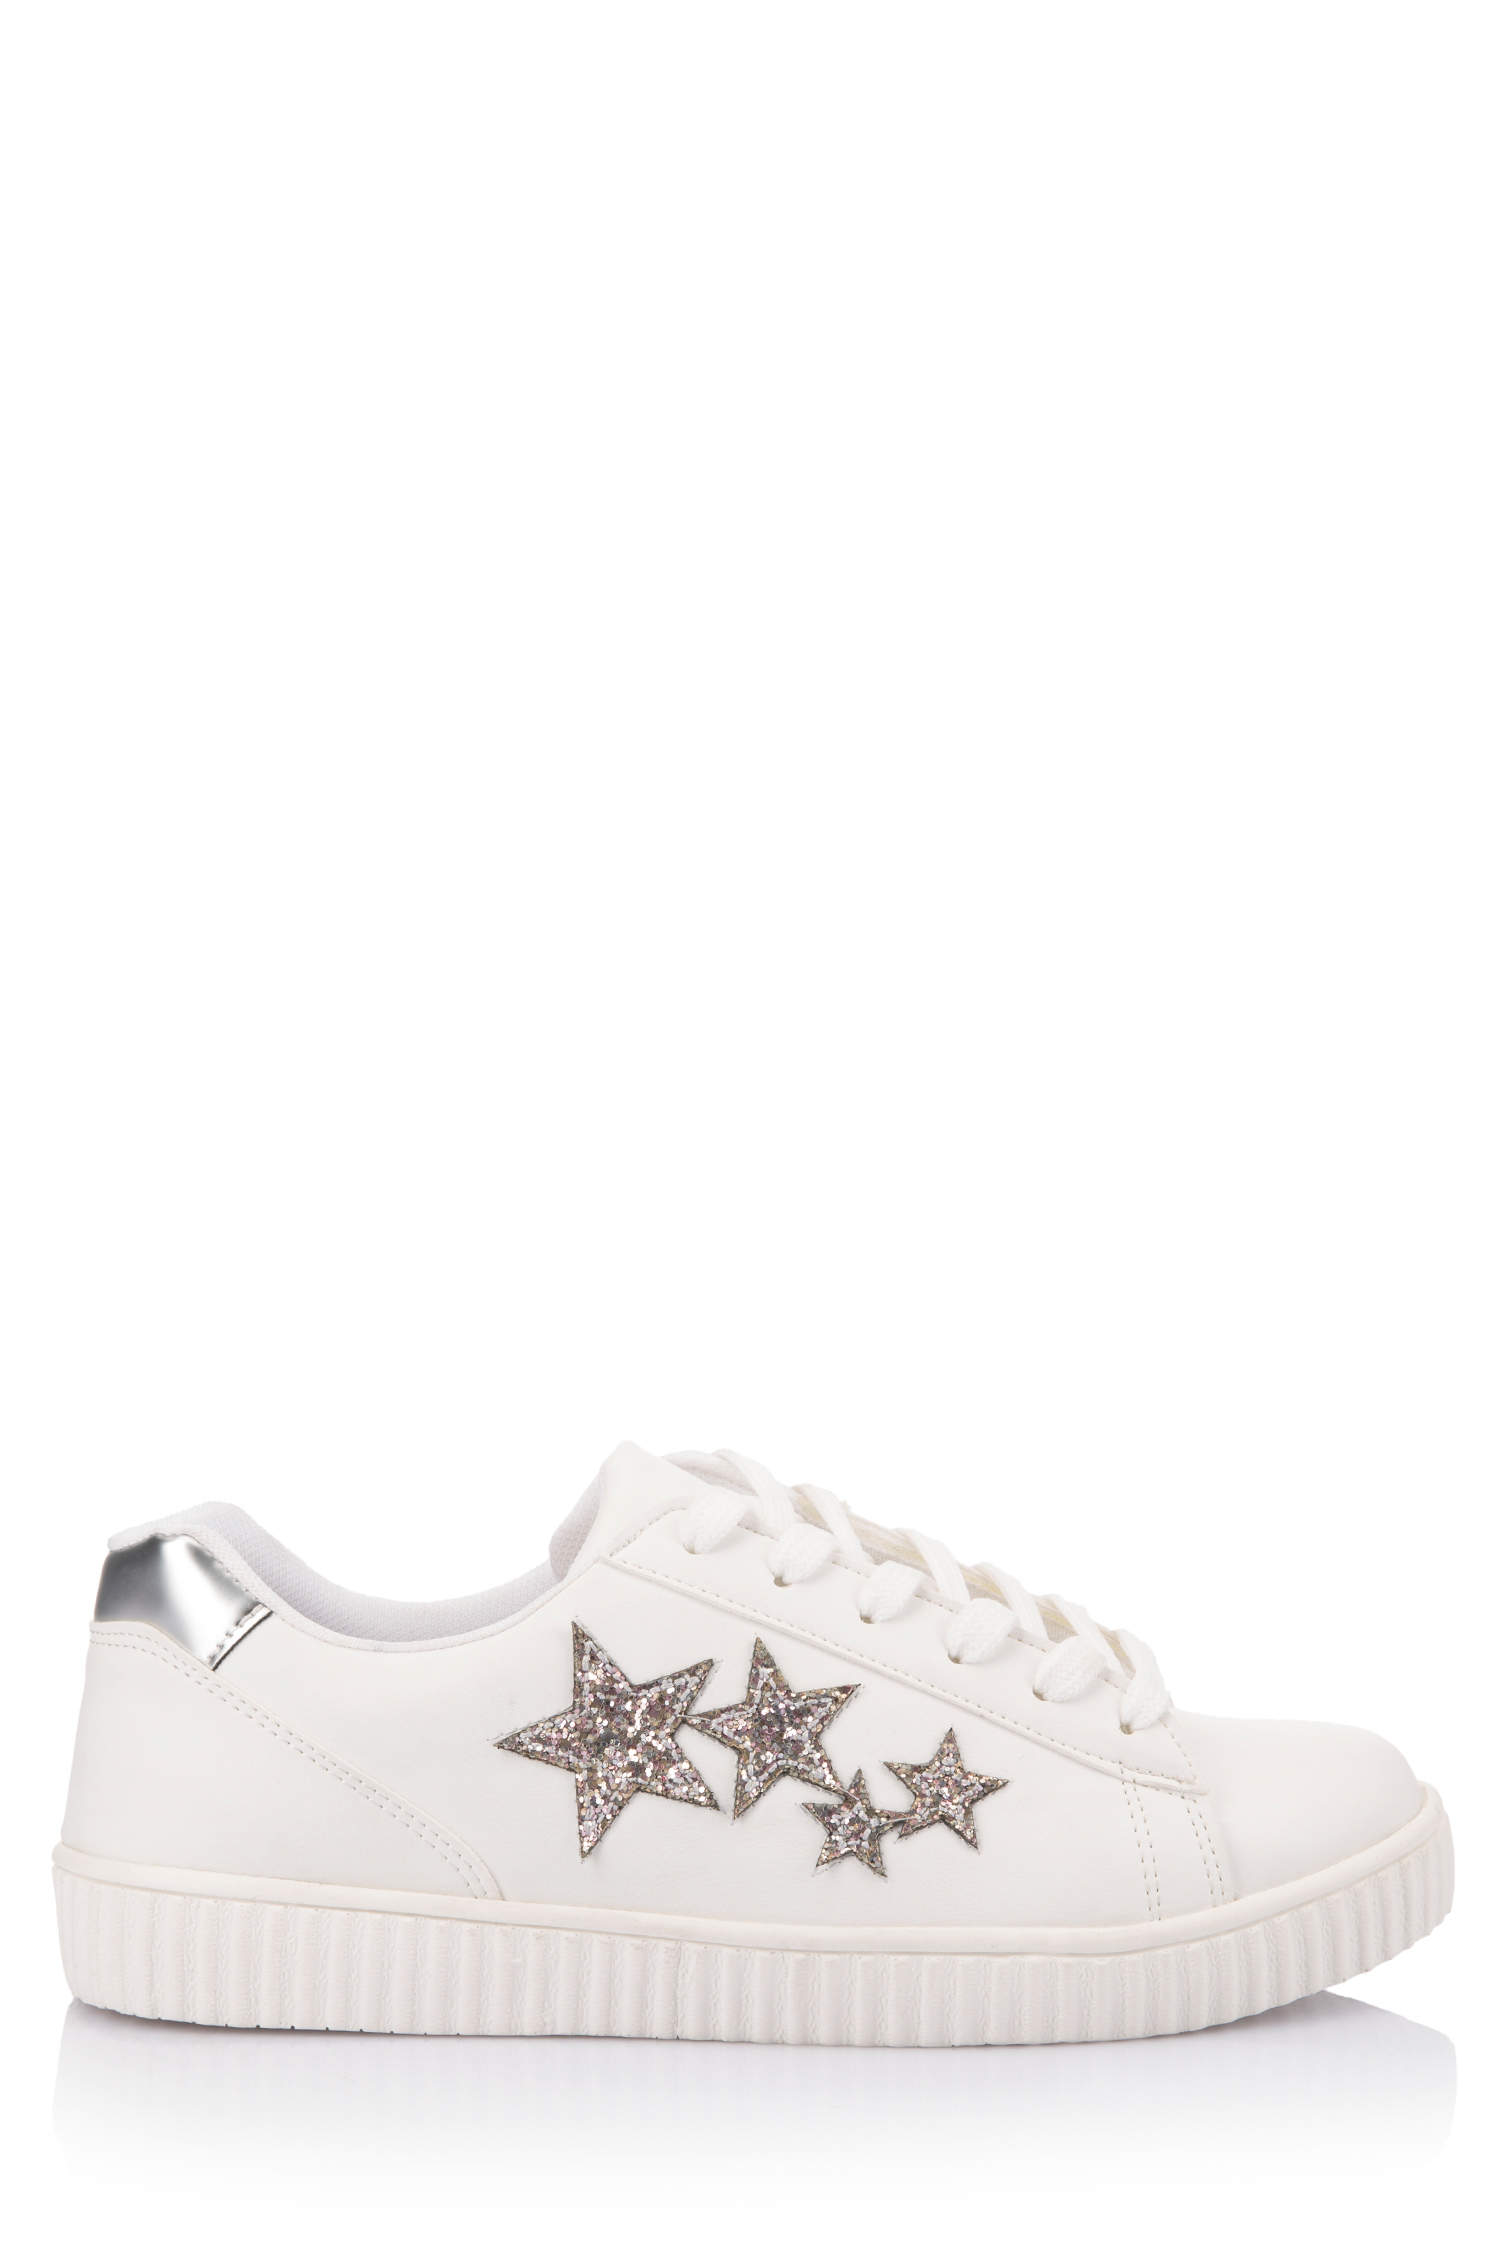 Defacto Yıldız Desenli Fashion Sneakers Ayakkabı. 2